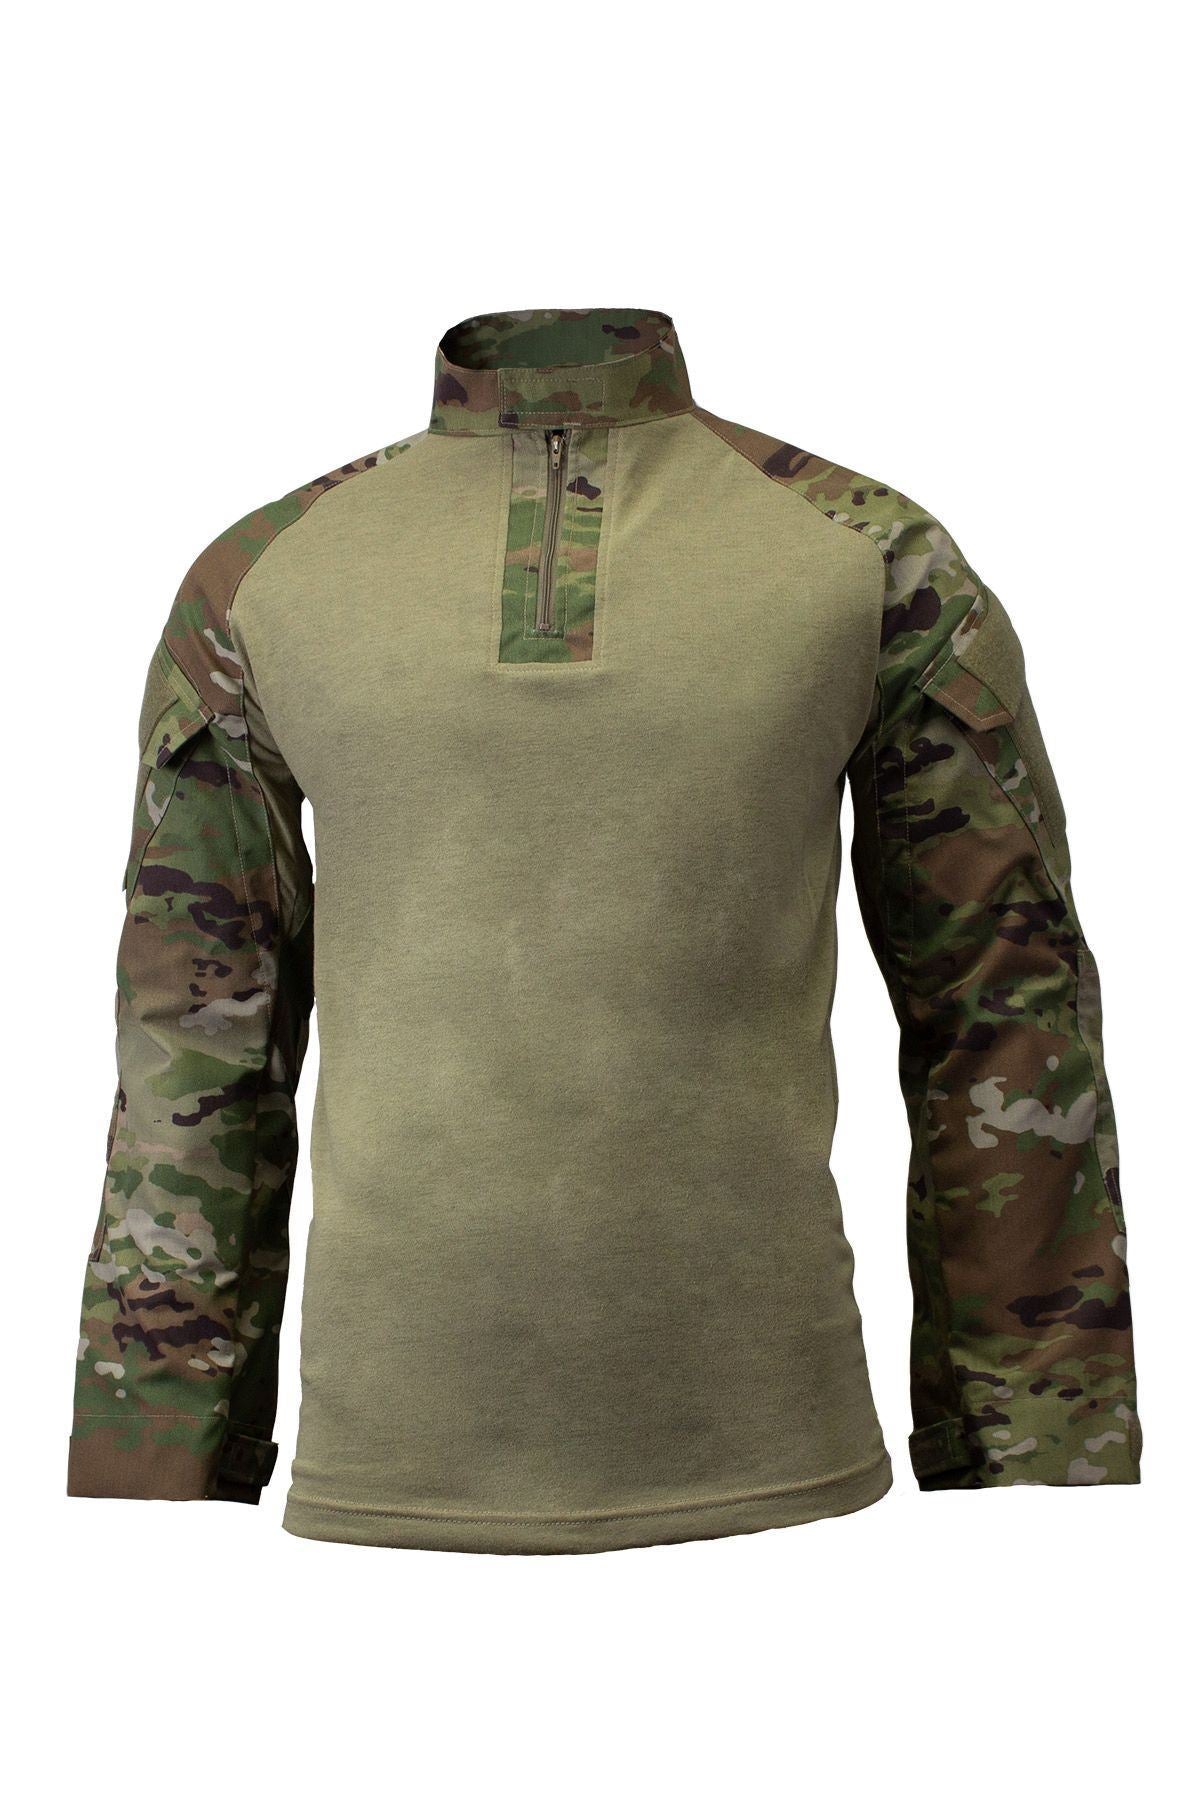 DRIFIRE FORTREX® FR Combat Shirt